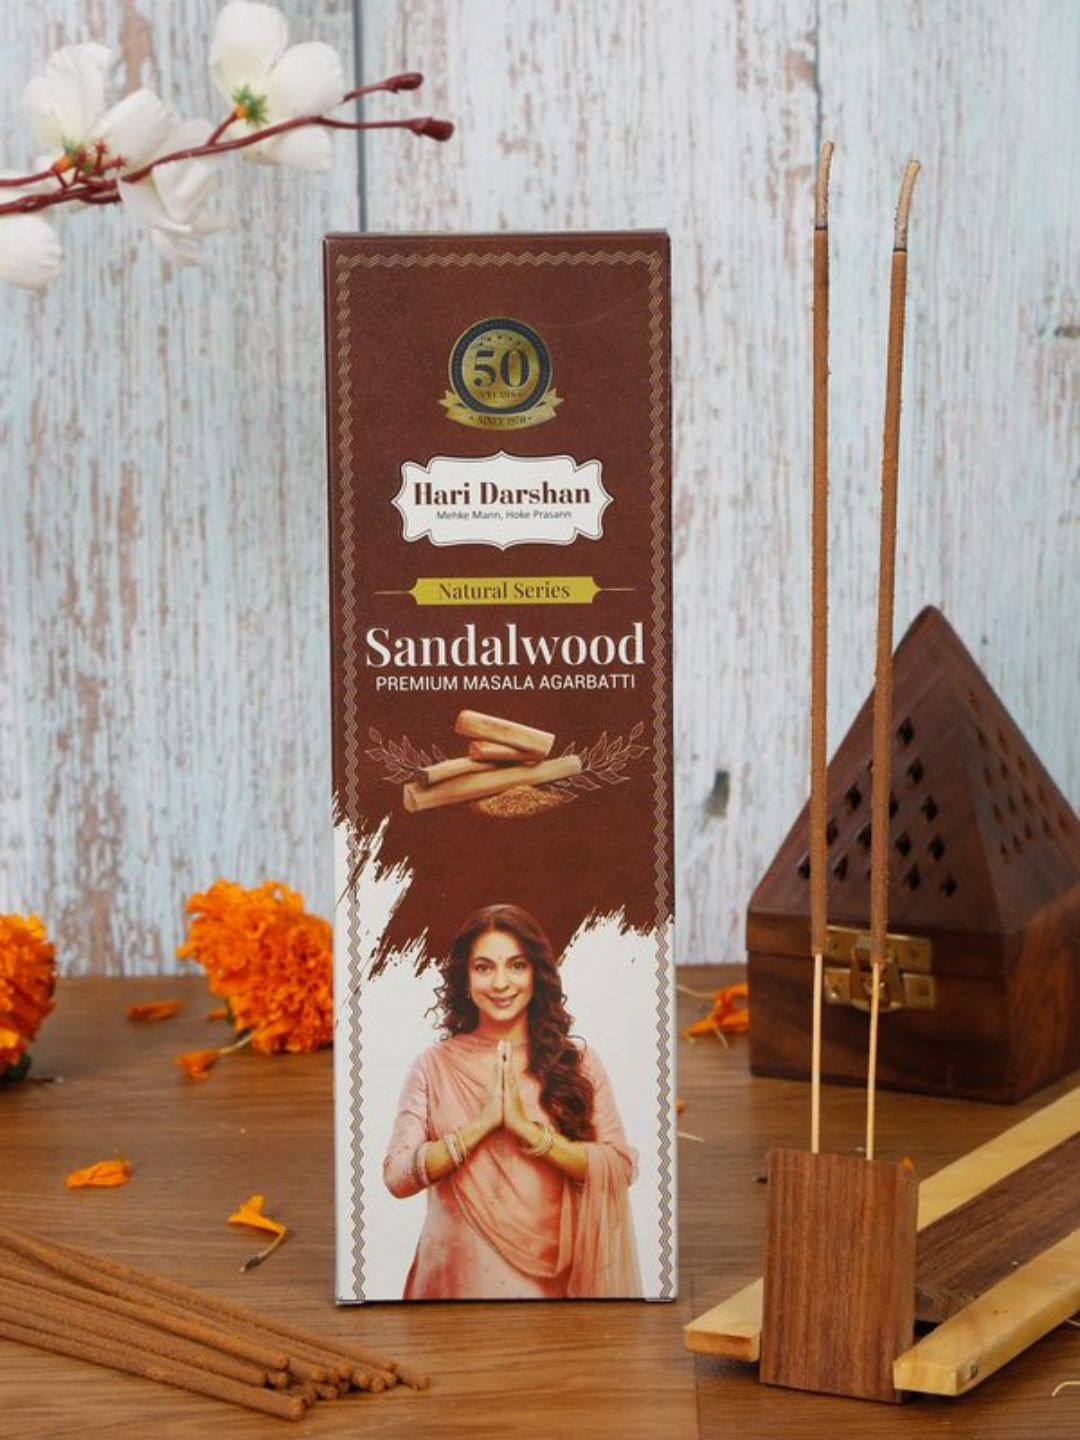 Hari Darshan Sandalwood Premium Masala Agarbatti Natural Incense Sticks – 60g